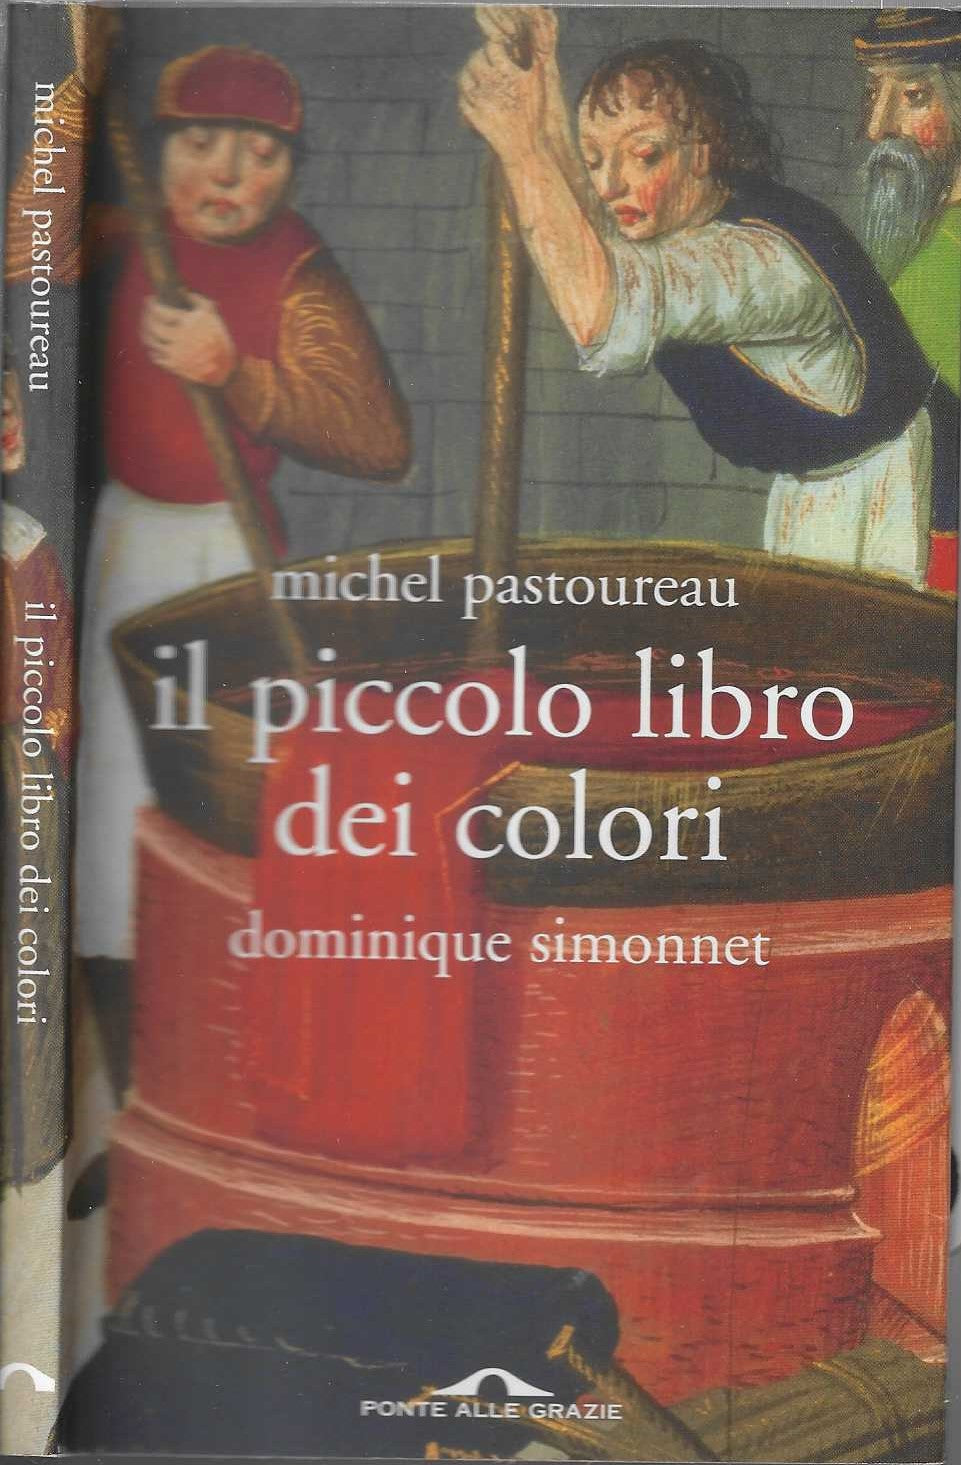 Il piccolo libro dei colori - Pastoureau, Michel